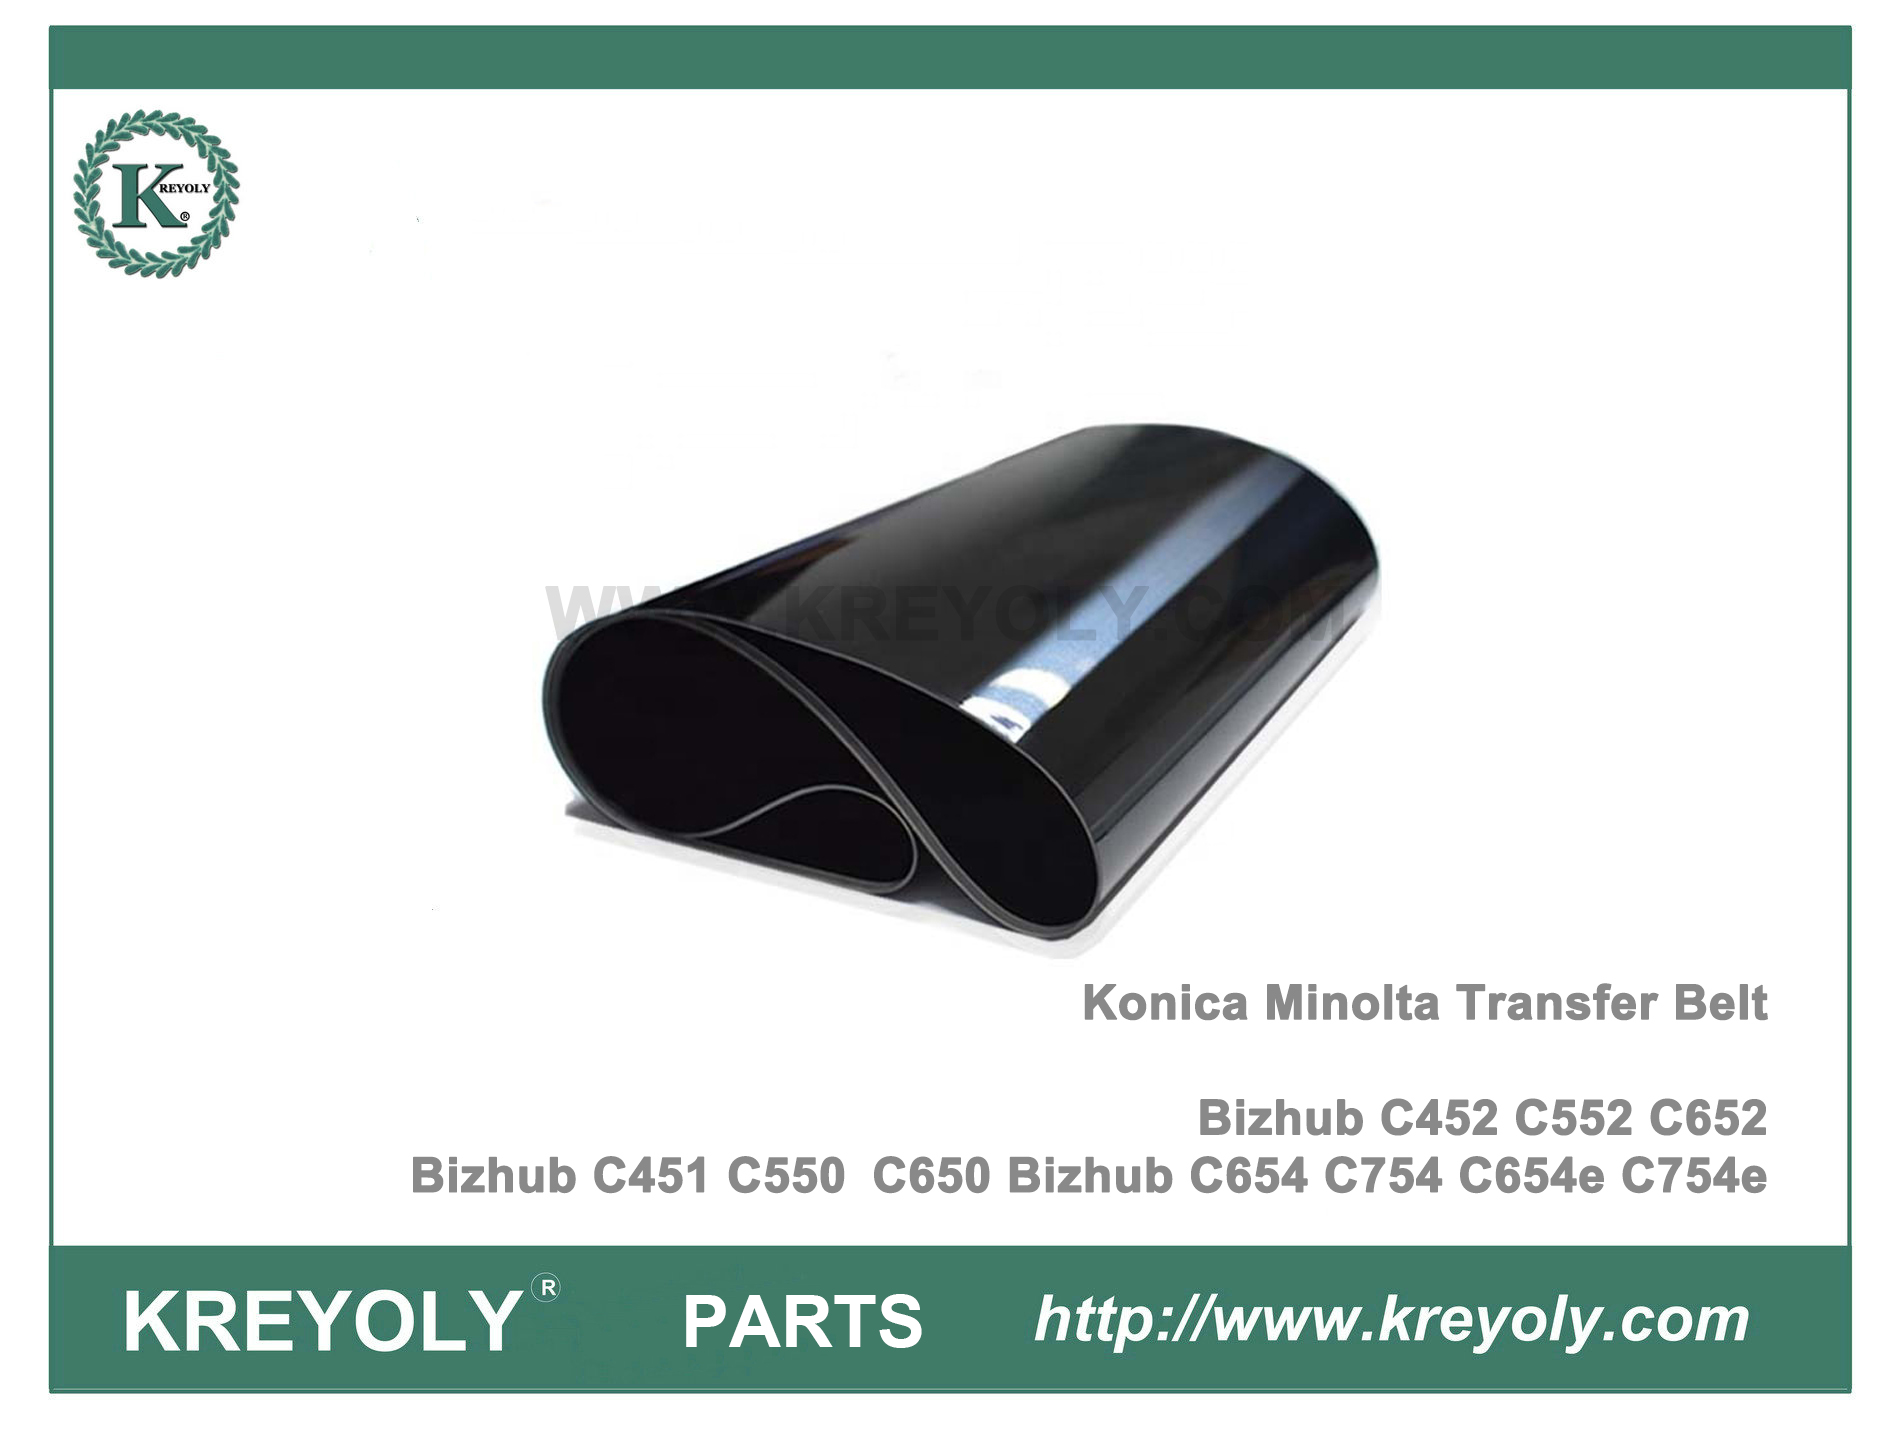 bizhub c452 transfer belt